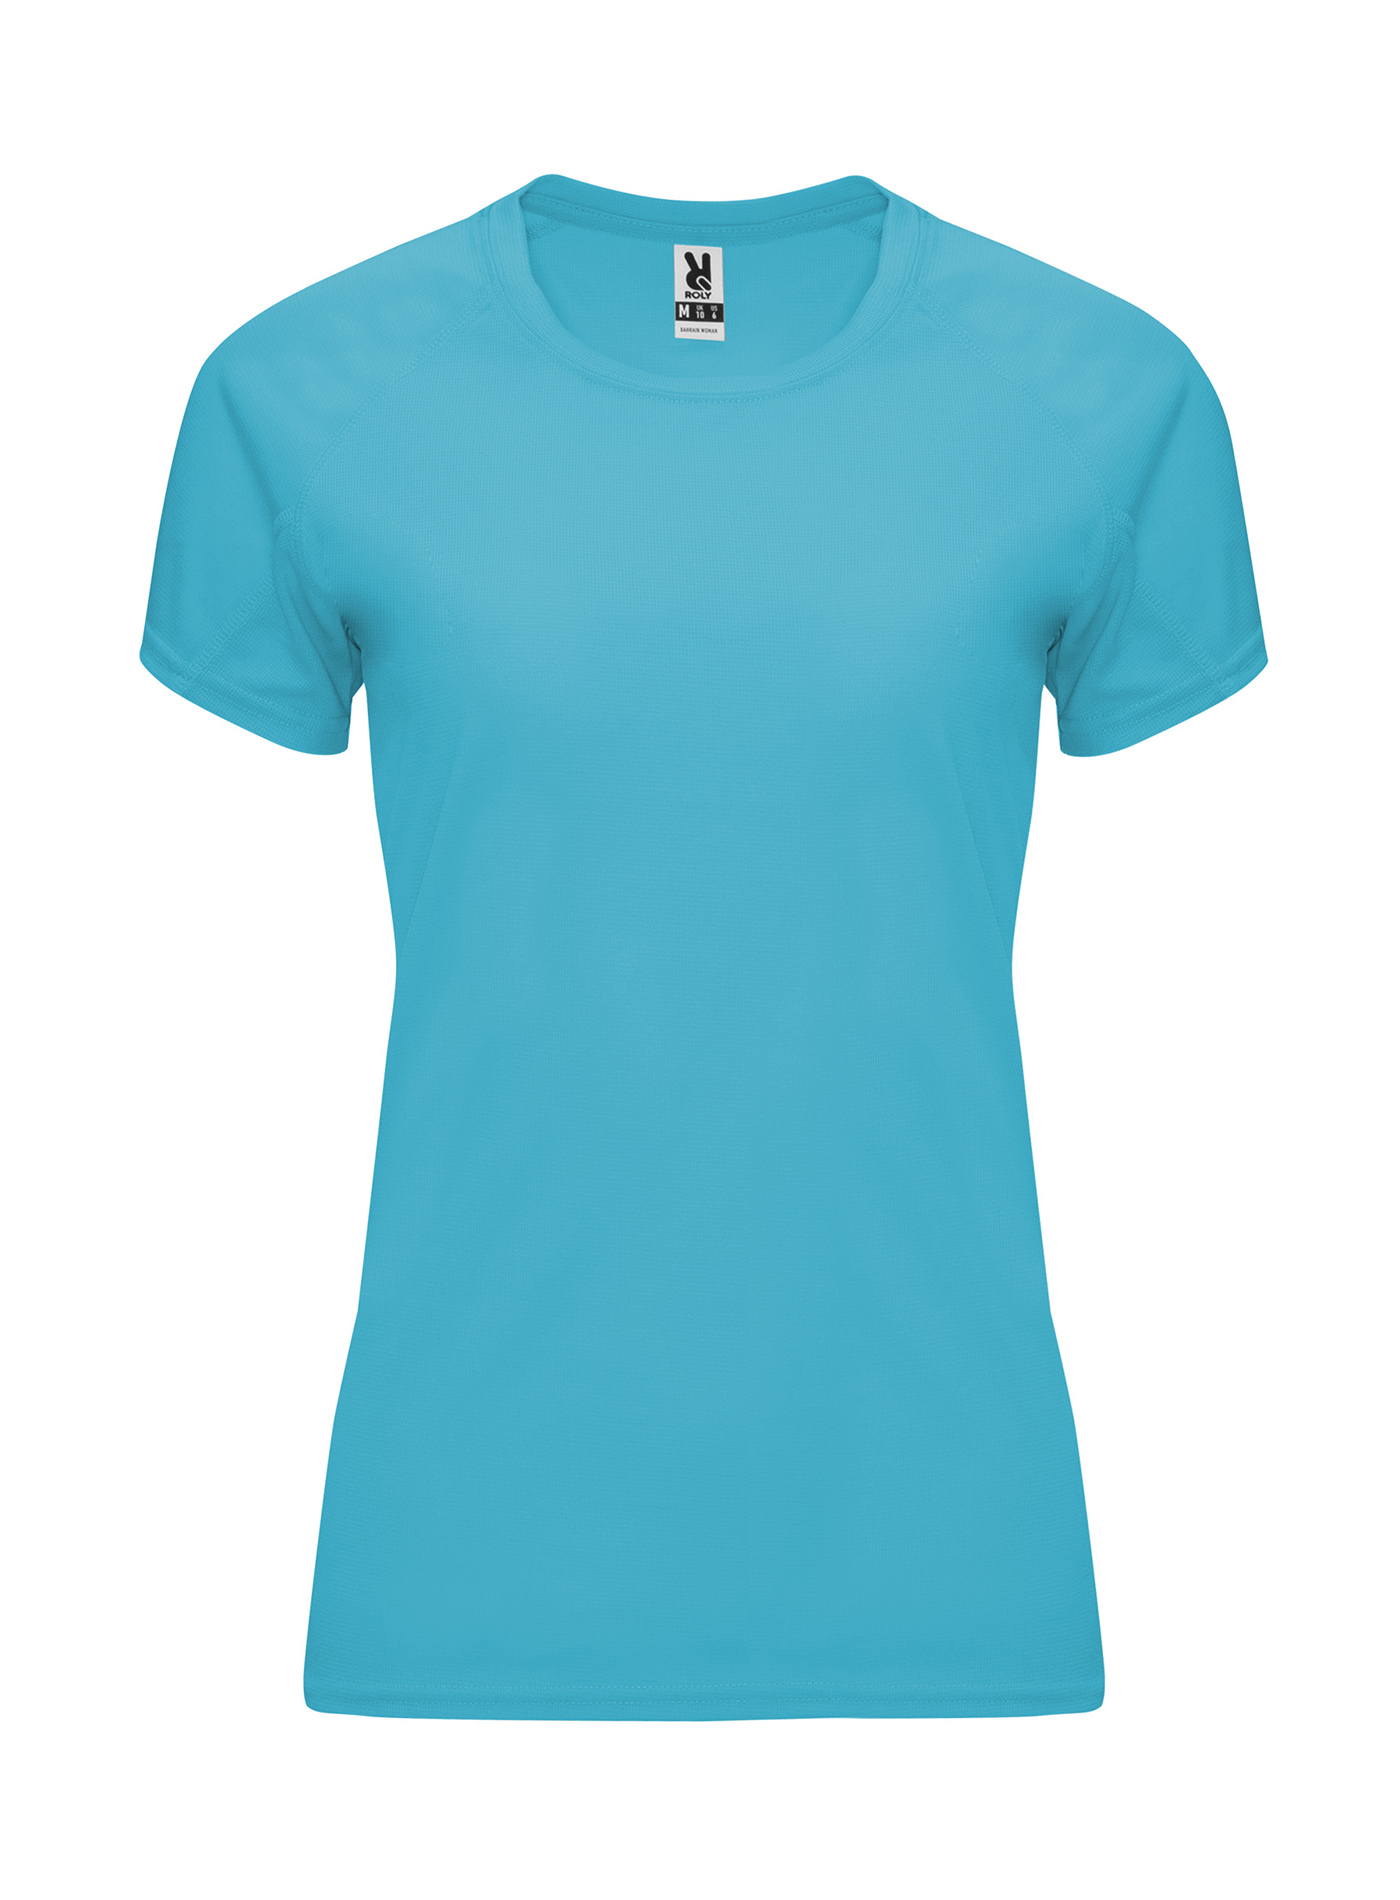 Dámské sportovní tričko Roly Bahrain - Tyrkysově modrá XL